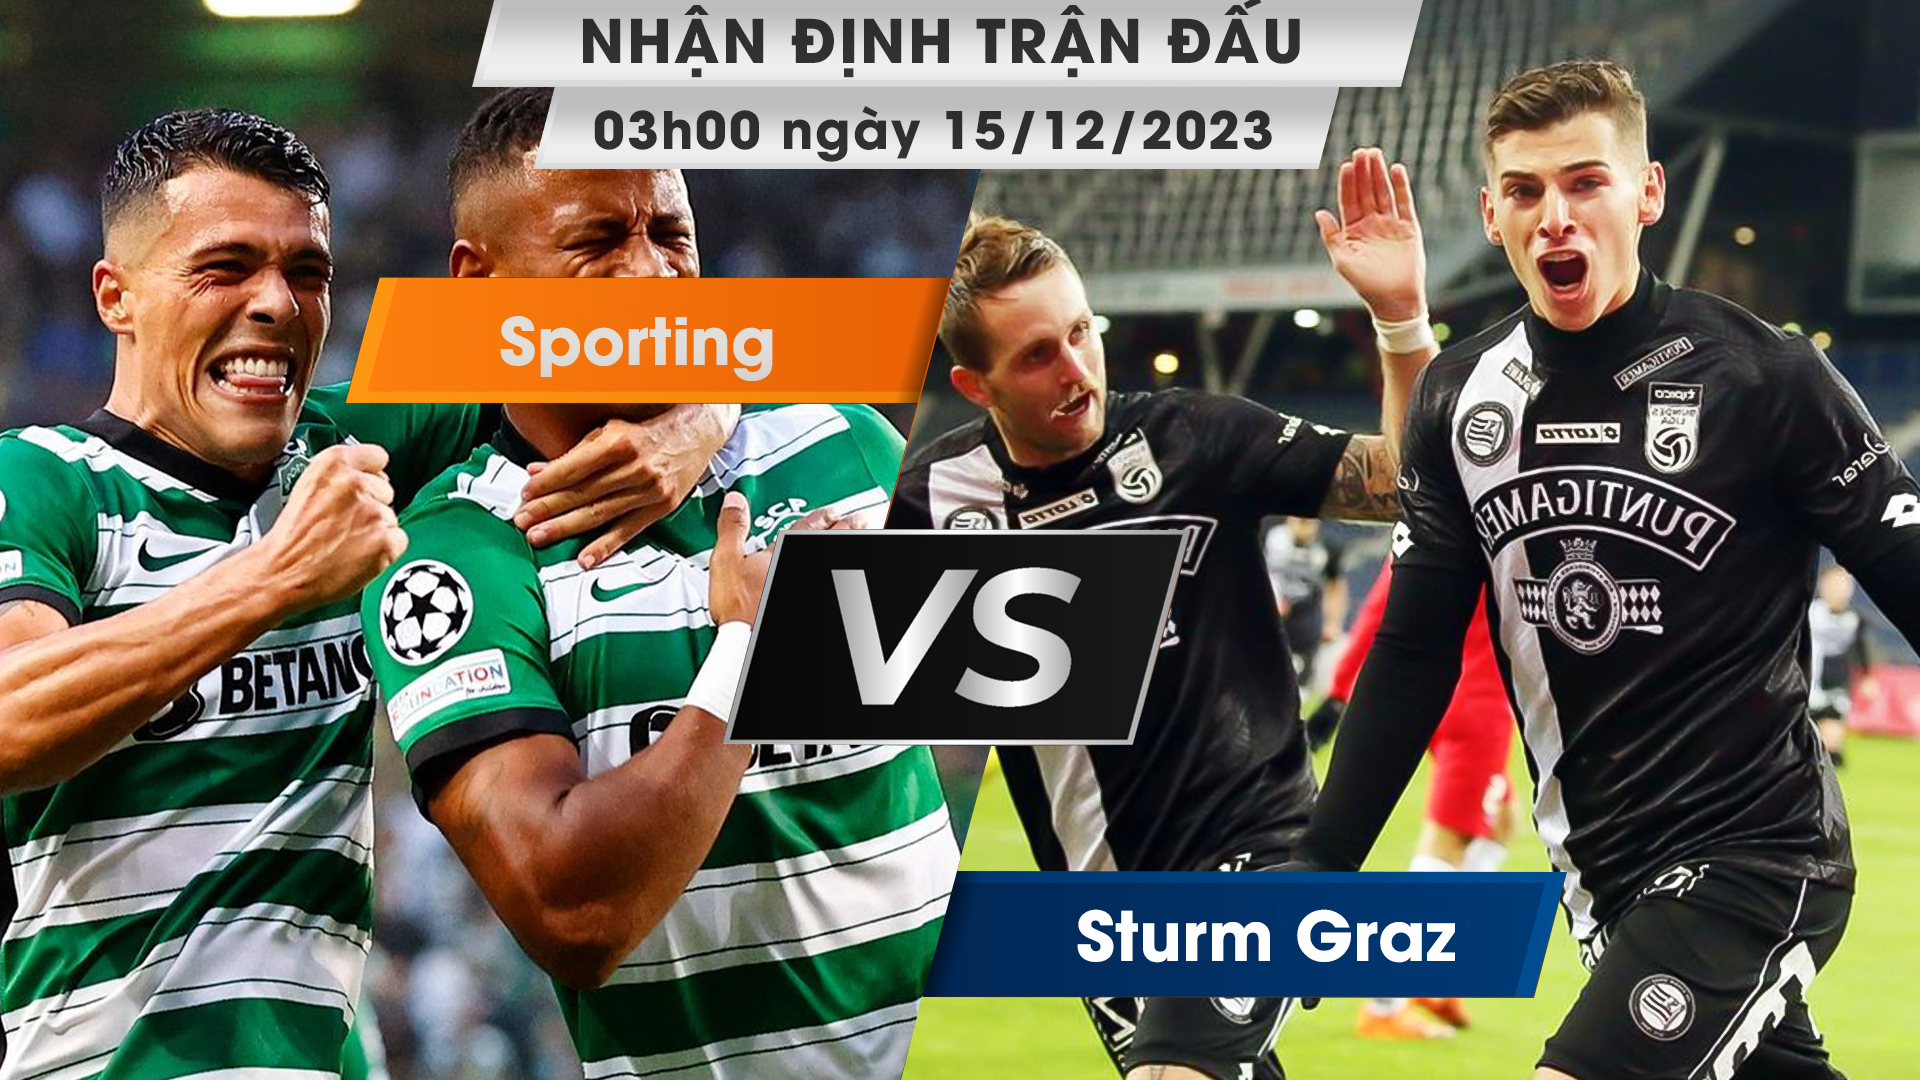 Nhận định, dự đoán Sporting vs Sturm Graz, 03h00 ngày 15/12/2023